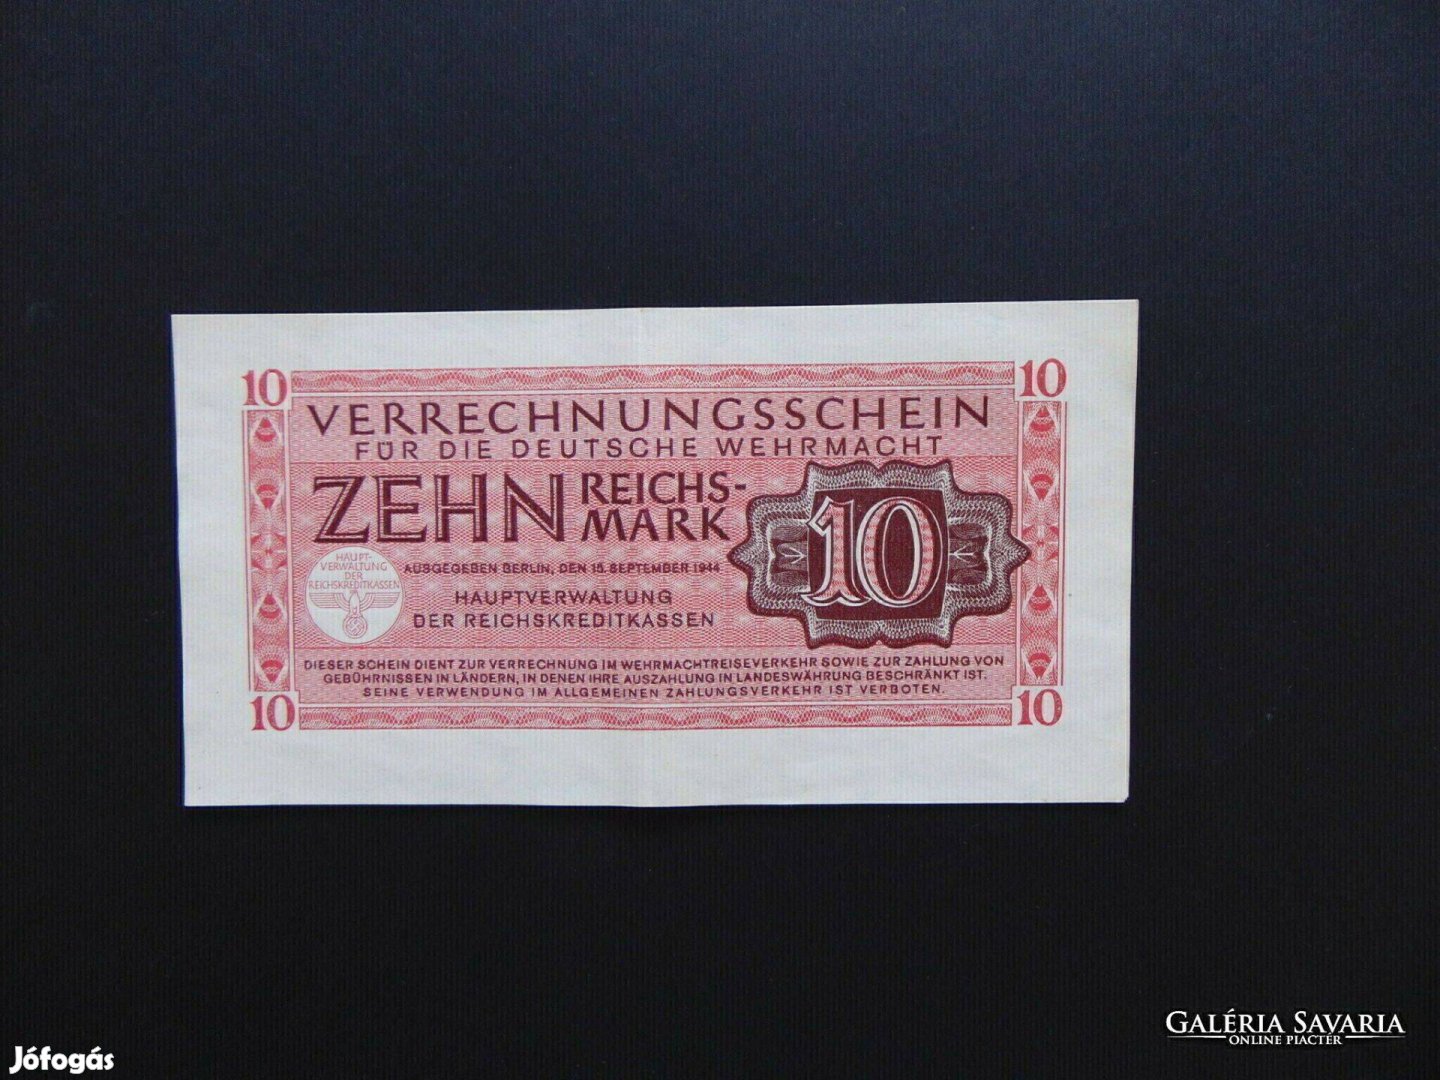 Németország 10 reichsmark bankjegy 1944 ! 01